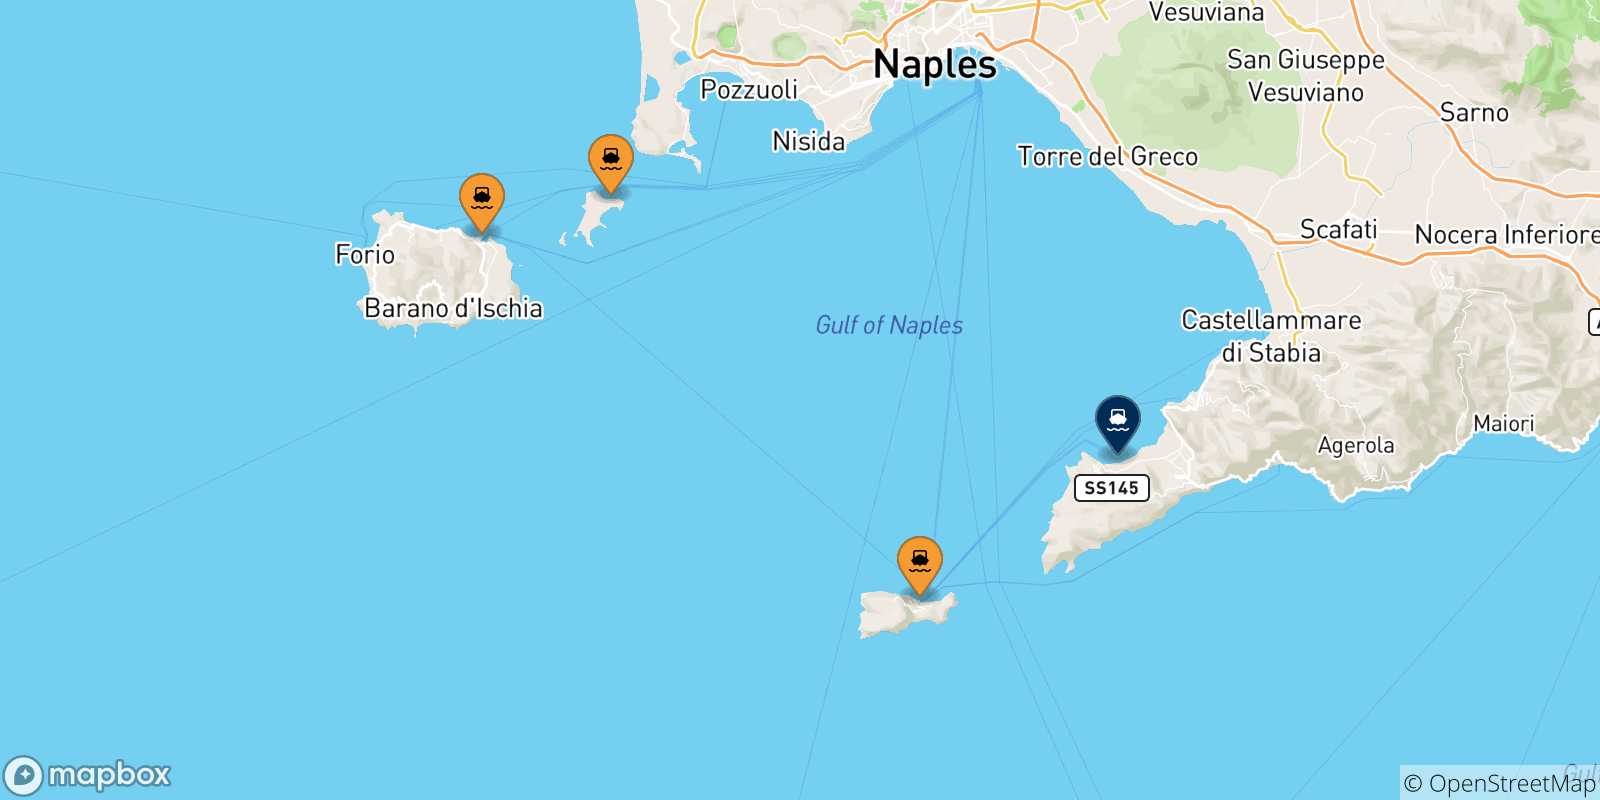 Mappa delle possibili rotte tra il Golfo Di Napoli e Sorrento